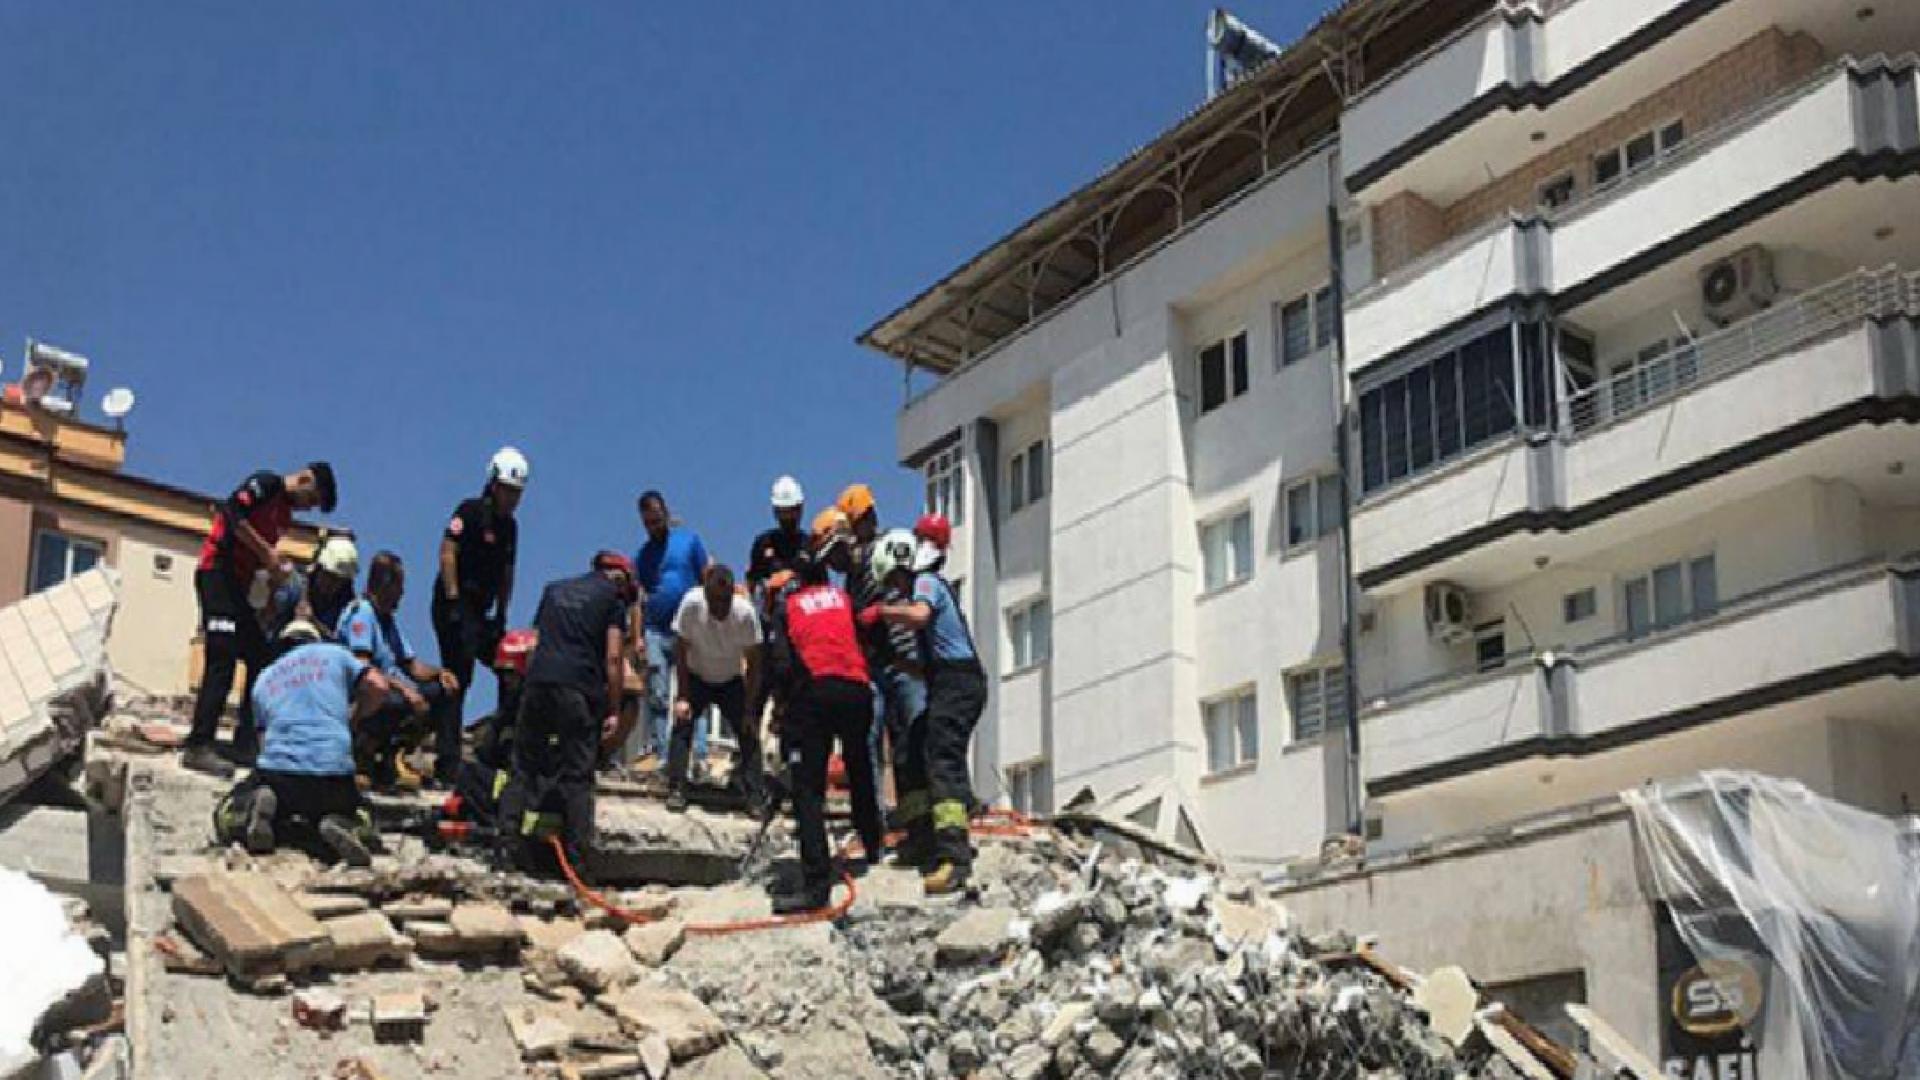 Gaziantep’te yıkım sırasında enkaz altında kalan Şahin Boz yaşamını kaybetti